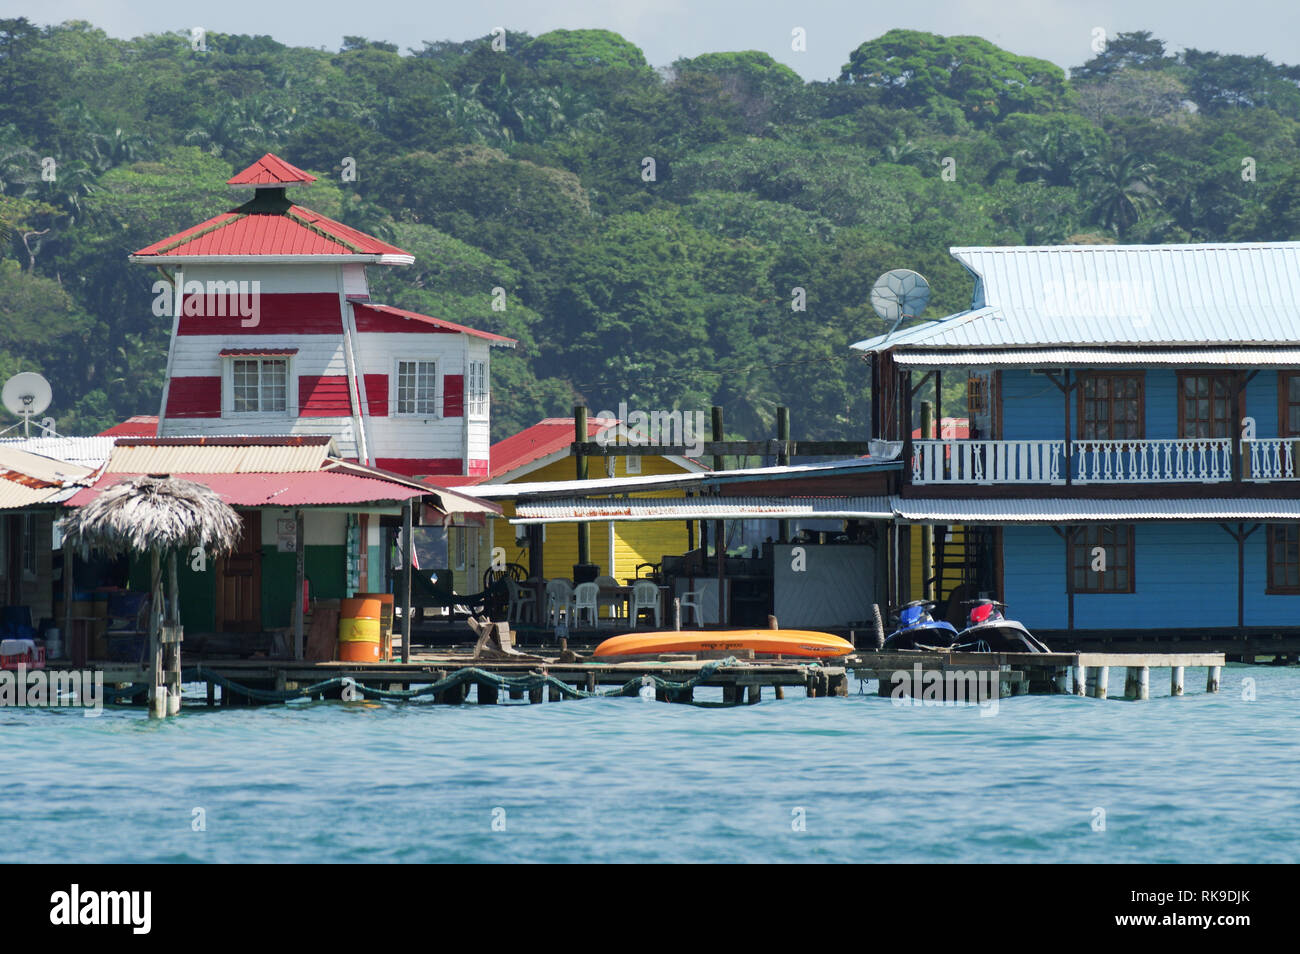 View of EI Faro del Calibri hotel on Carenero Island in Bocas Del Toro Archipelago, Panama Stock Photo